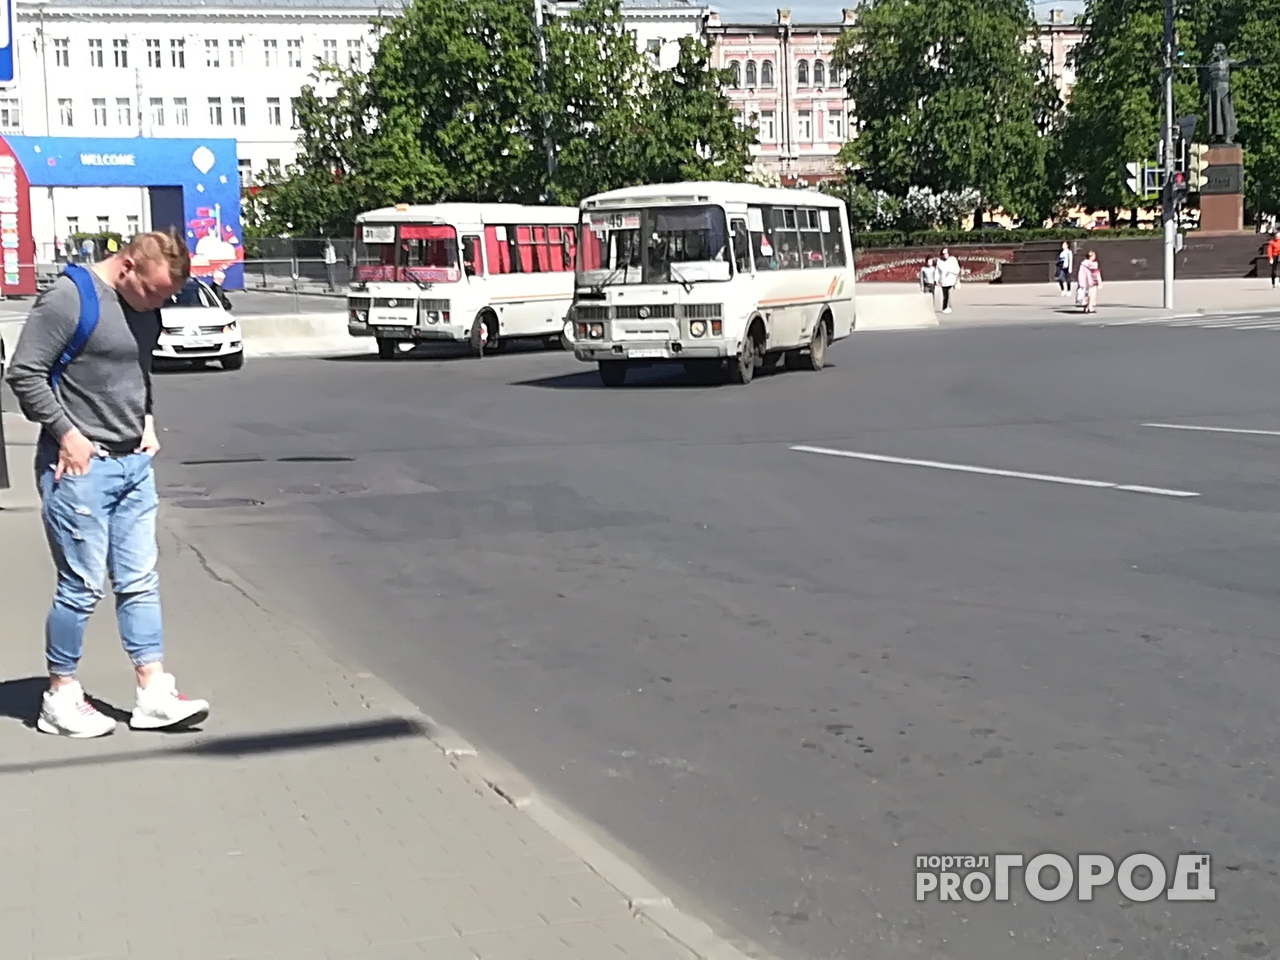 Пенсионерка погибла при падении из автобуса в Нижнем Новгороде